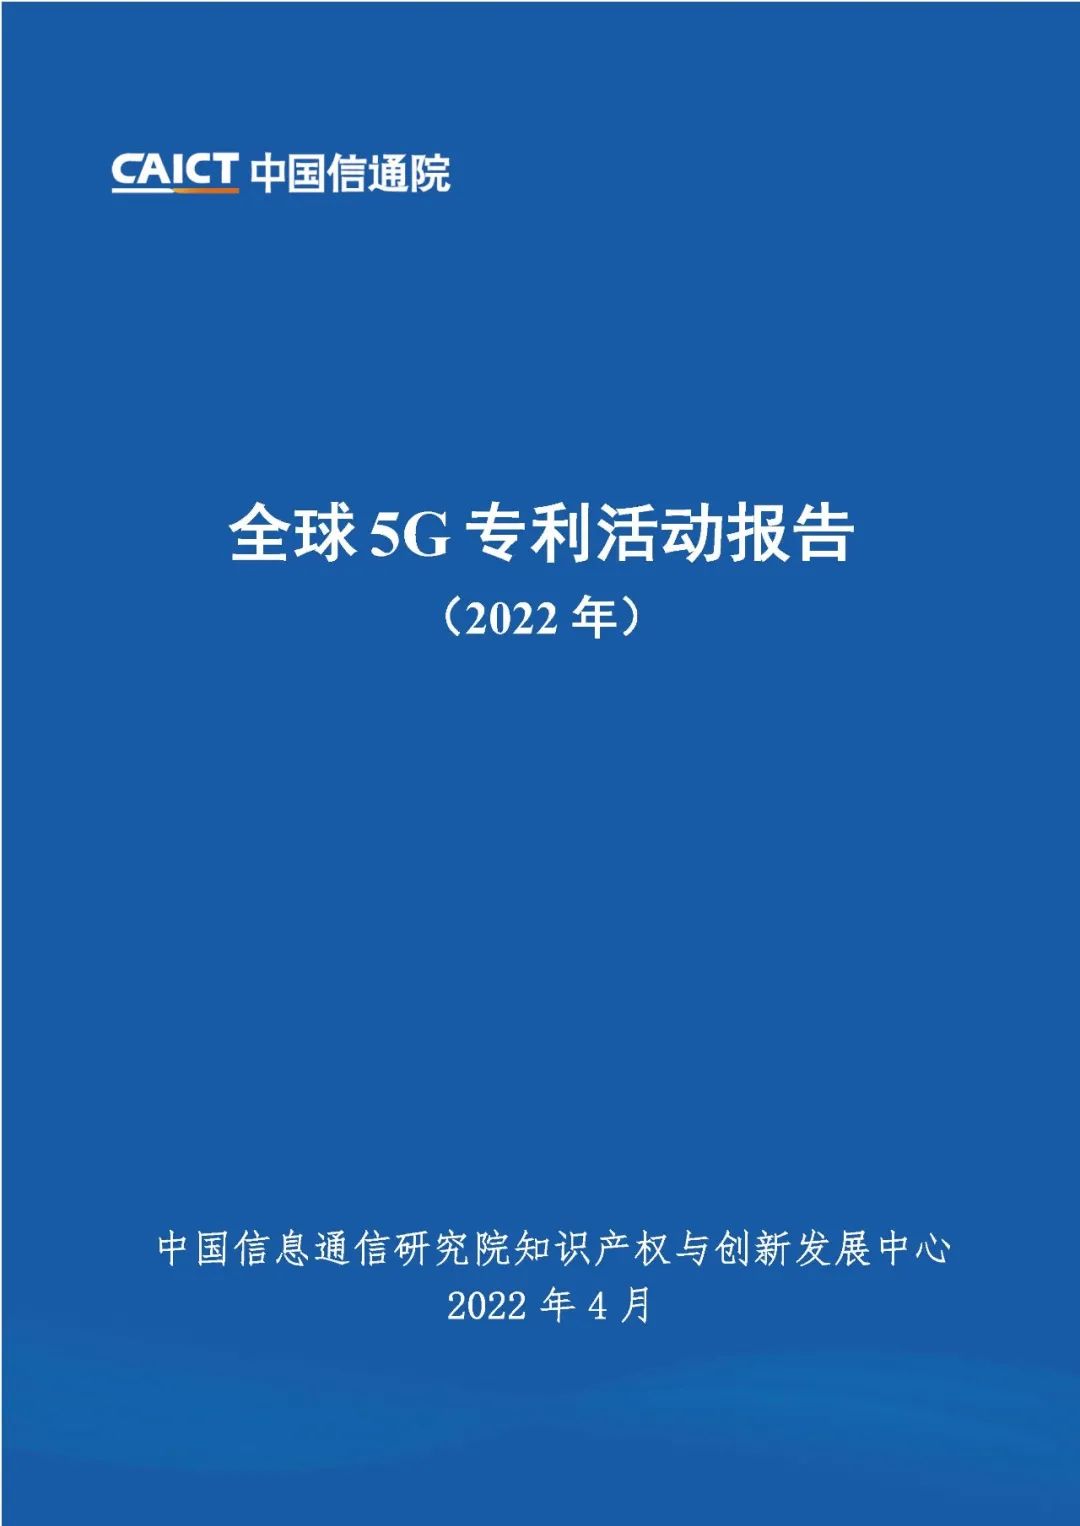 中国信通院发布《全球5G专利活动报告（2022年）》